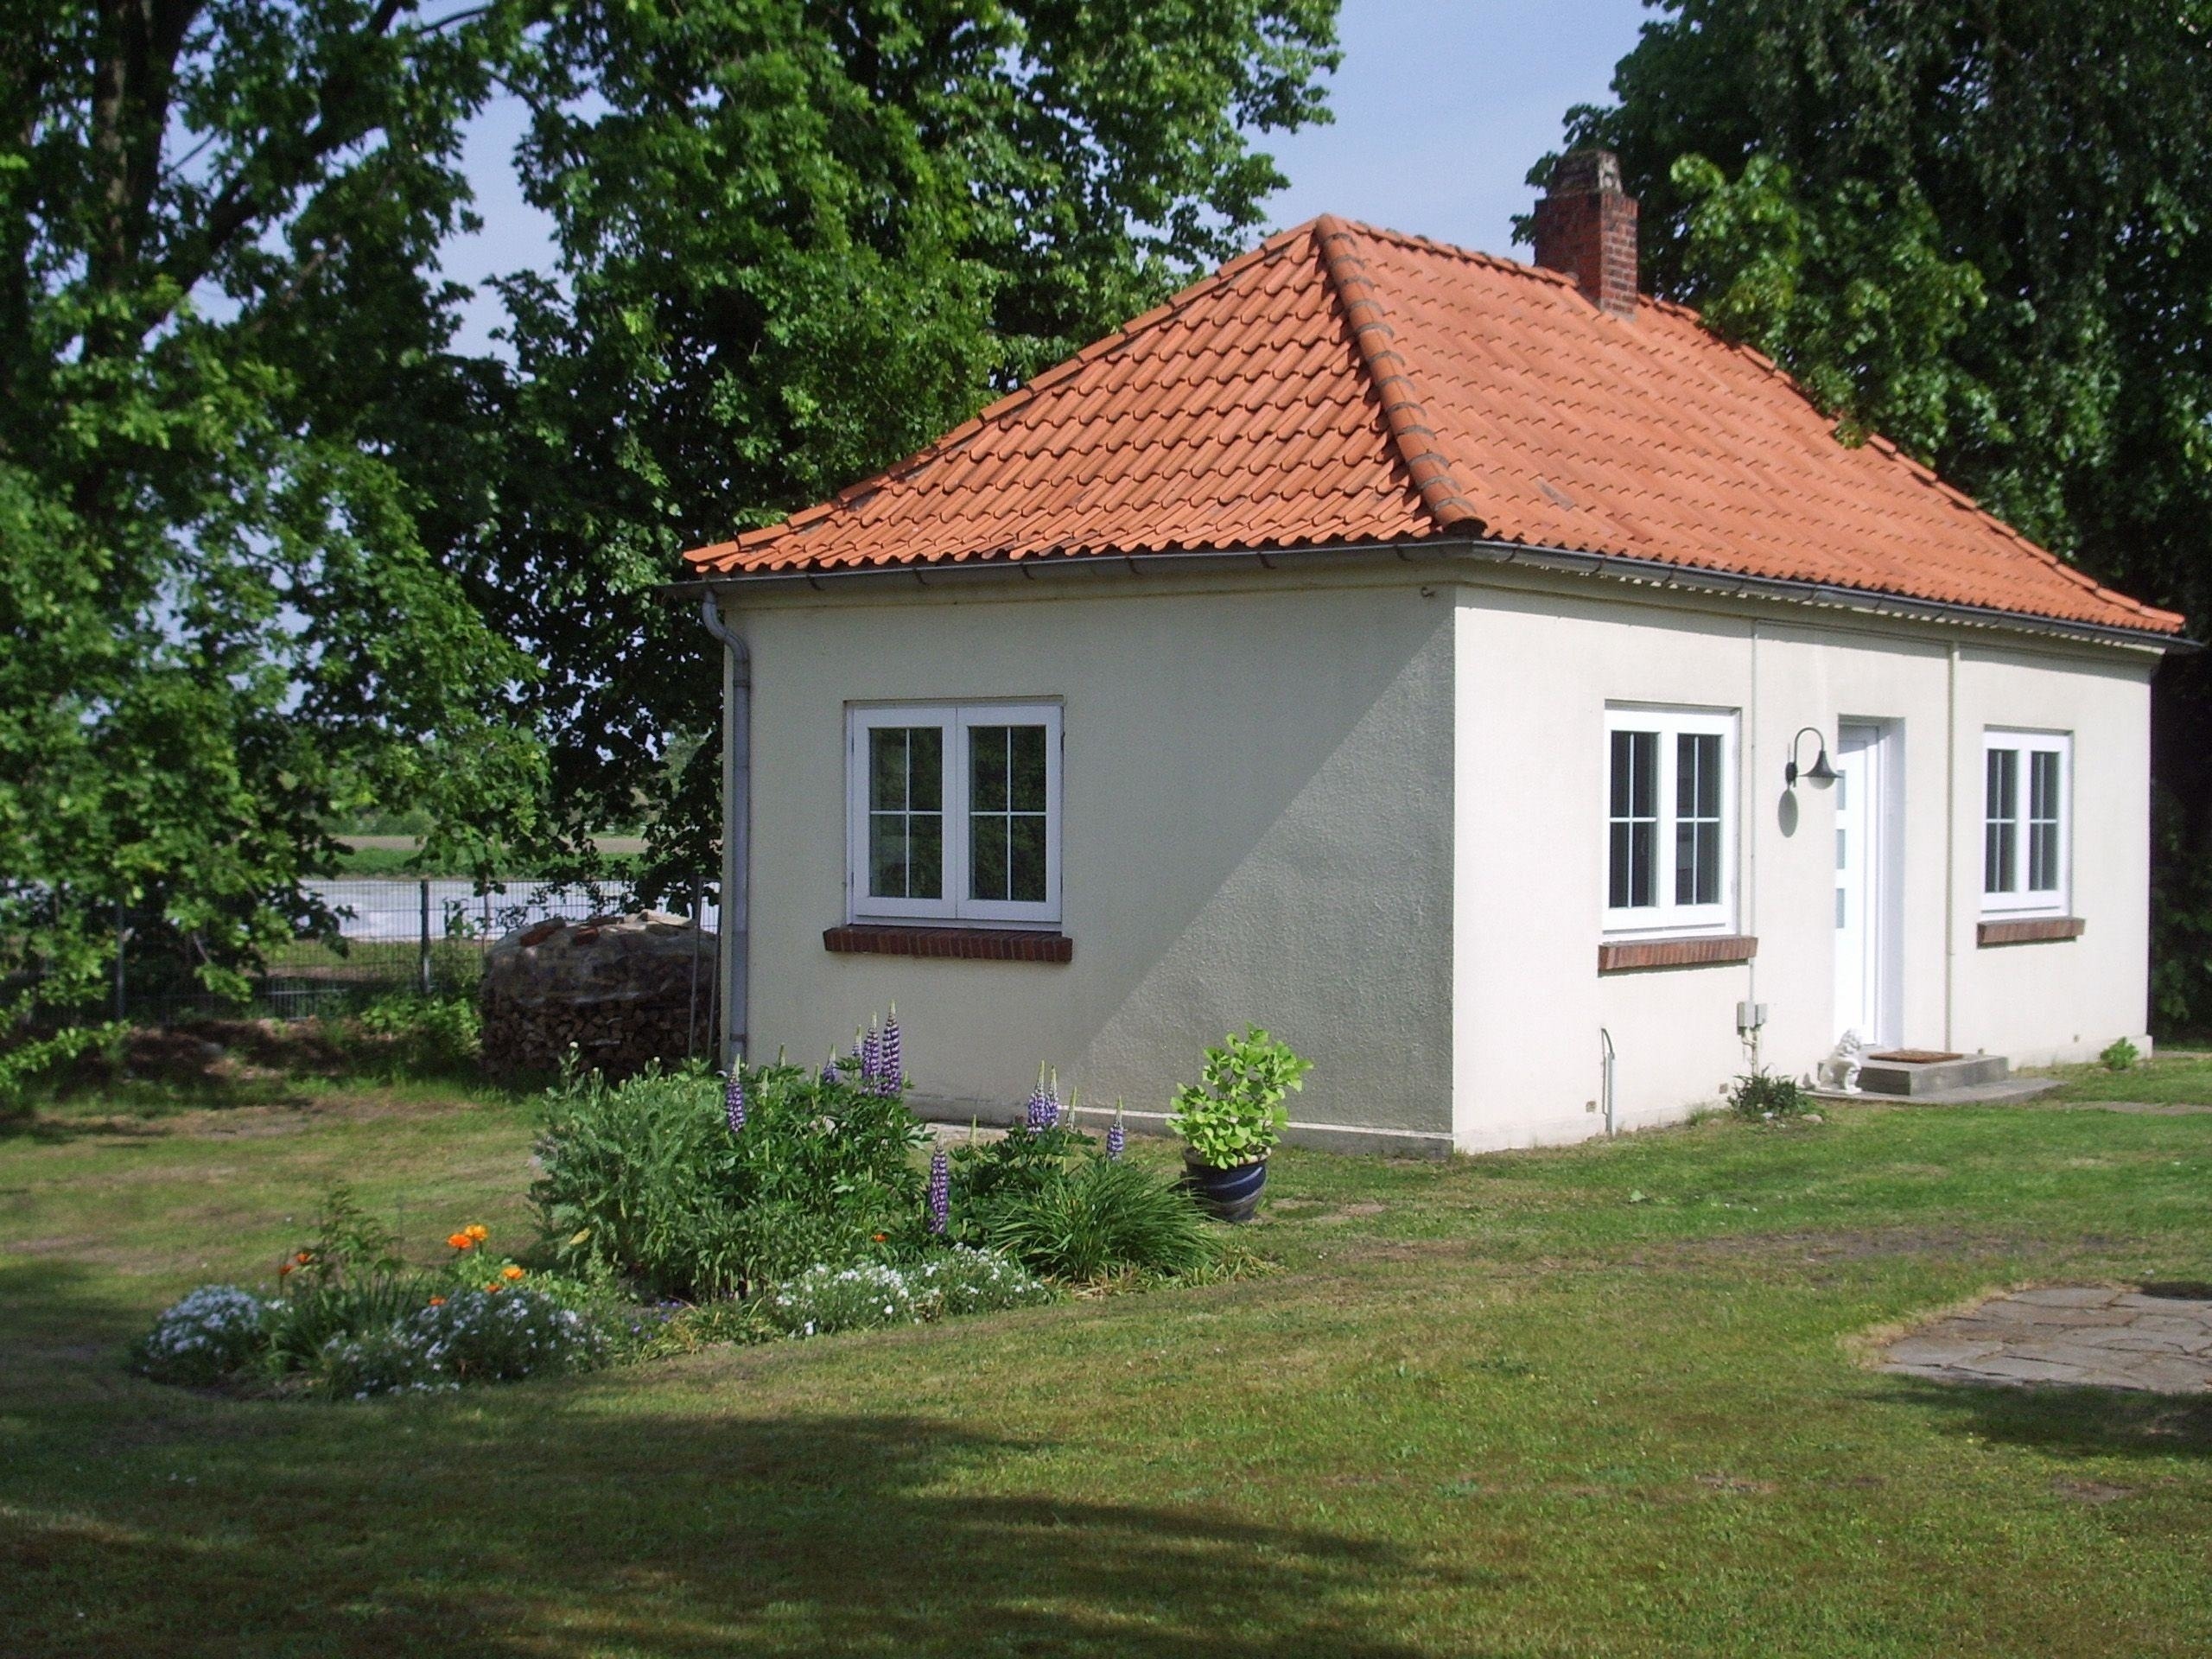 Kleines Ferienhaus bei Lüneburg Ferienhaus in Niedersachsen